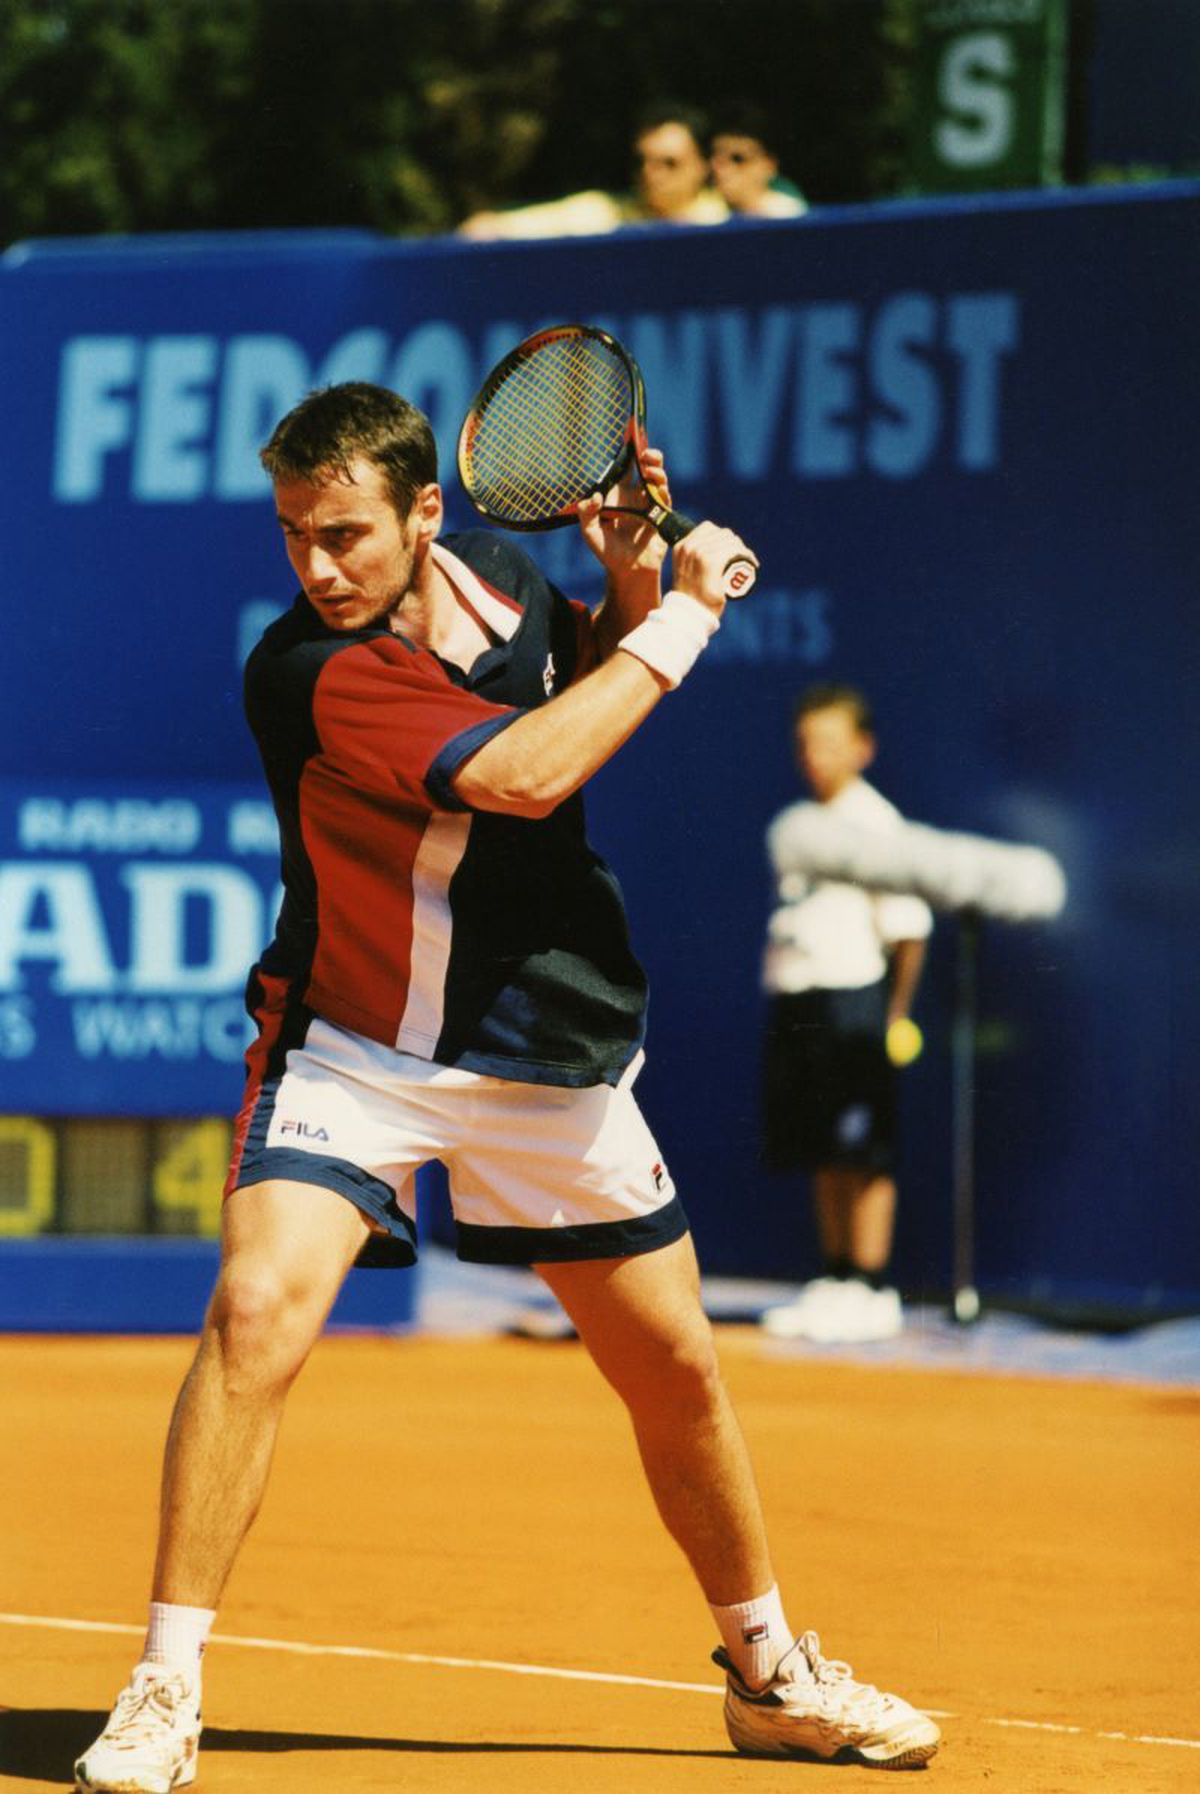 SEISM în tenis: dispare reverul cu o mână? De la Andrei Pavel la Victor Hănescu, 6 experți răspund pentru GSP: cum se schimbă tenisul? 6 diferențe: „De la deplasare, la passing-shots”